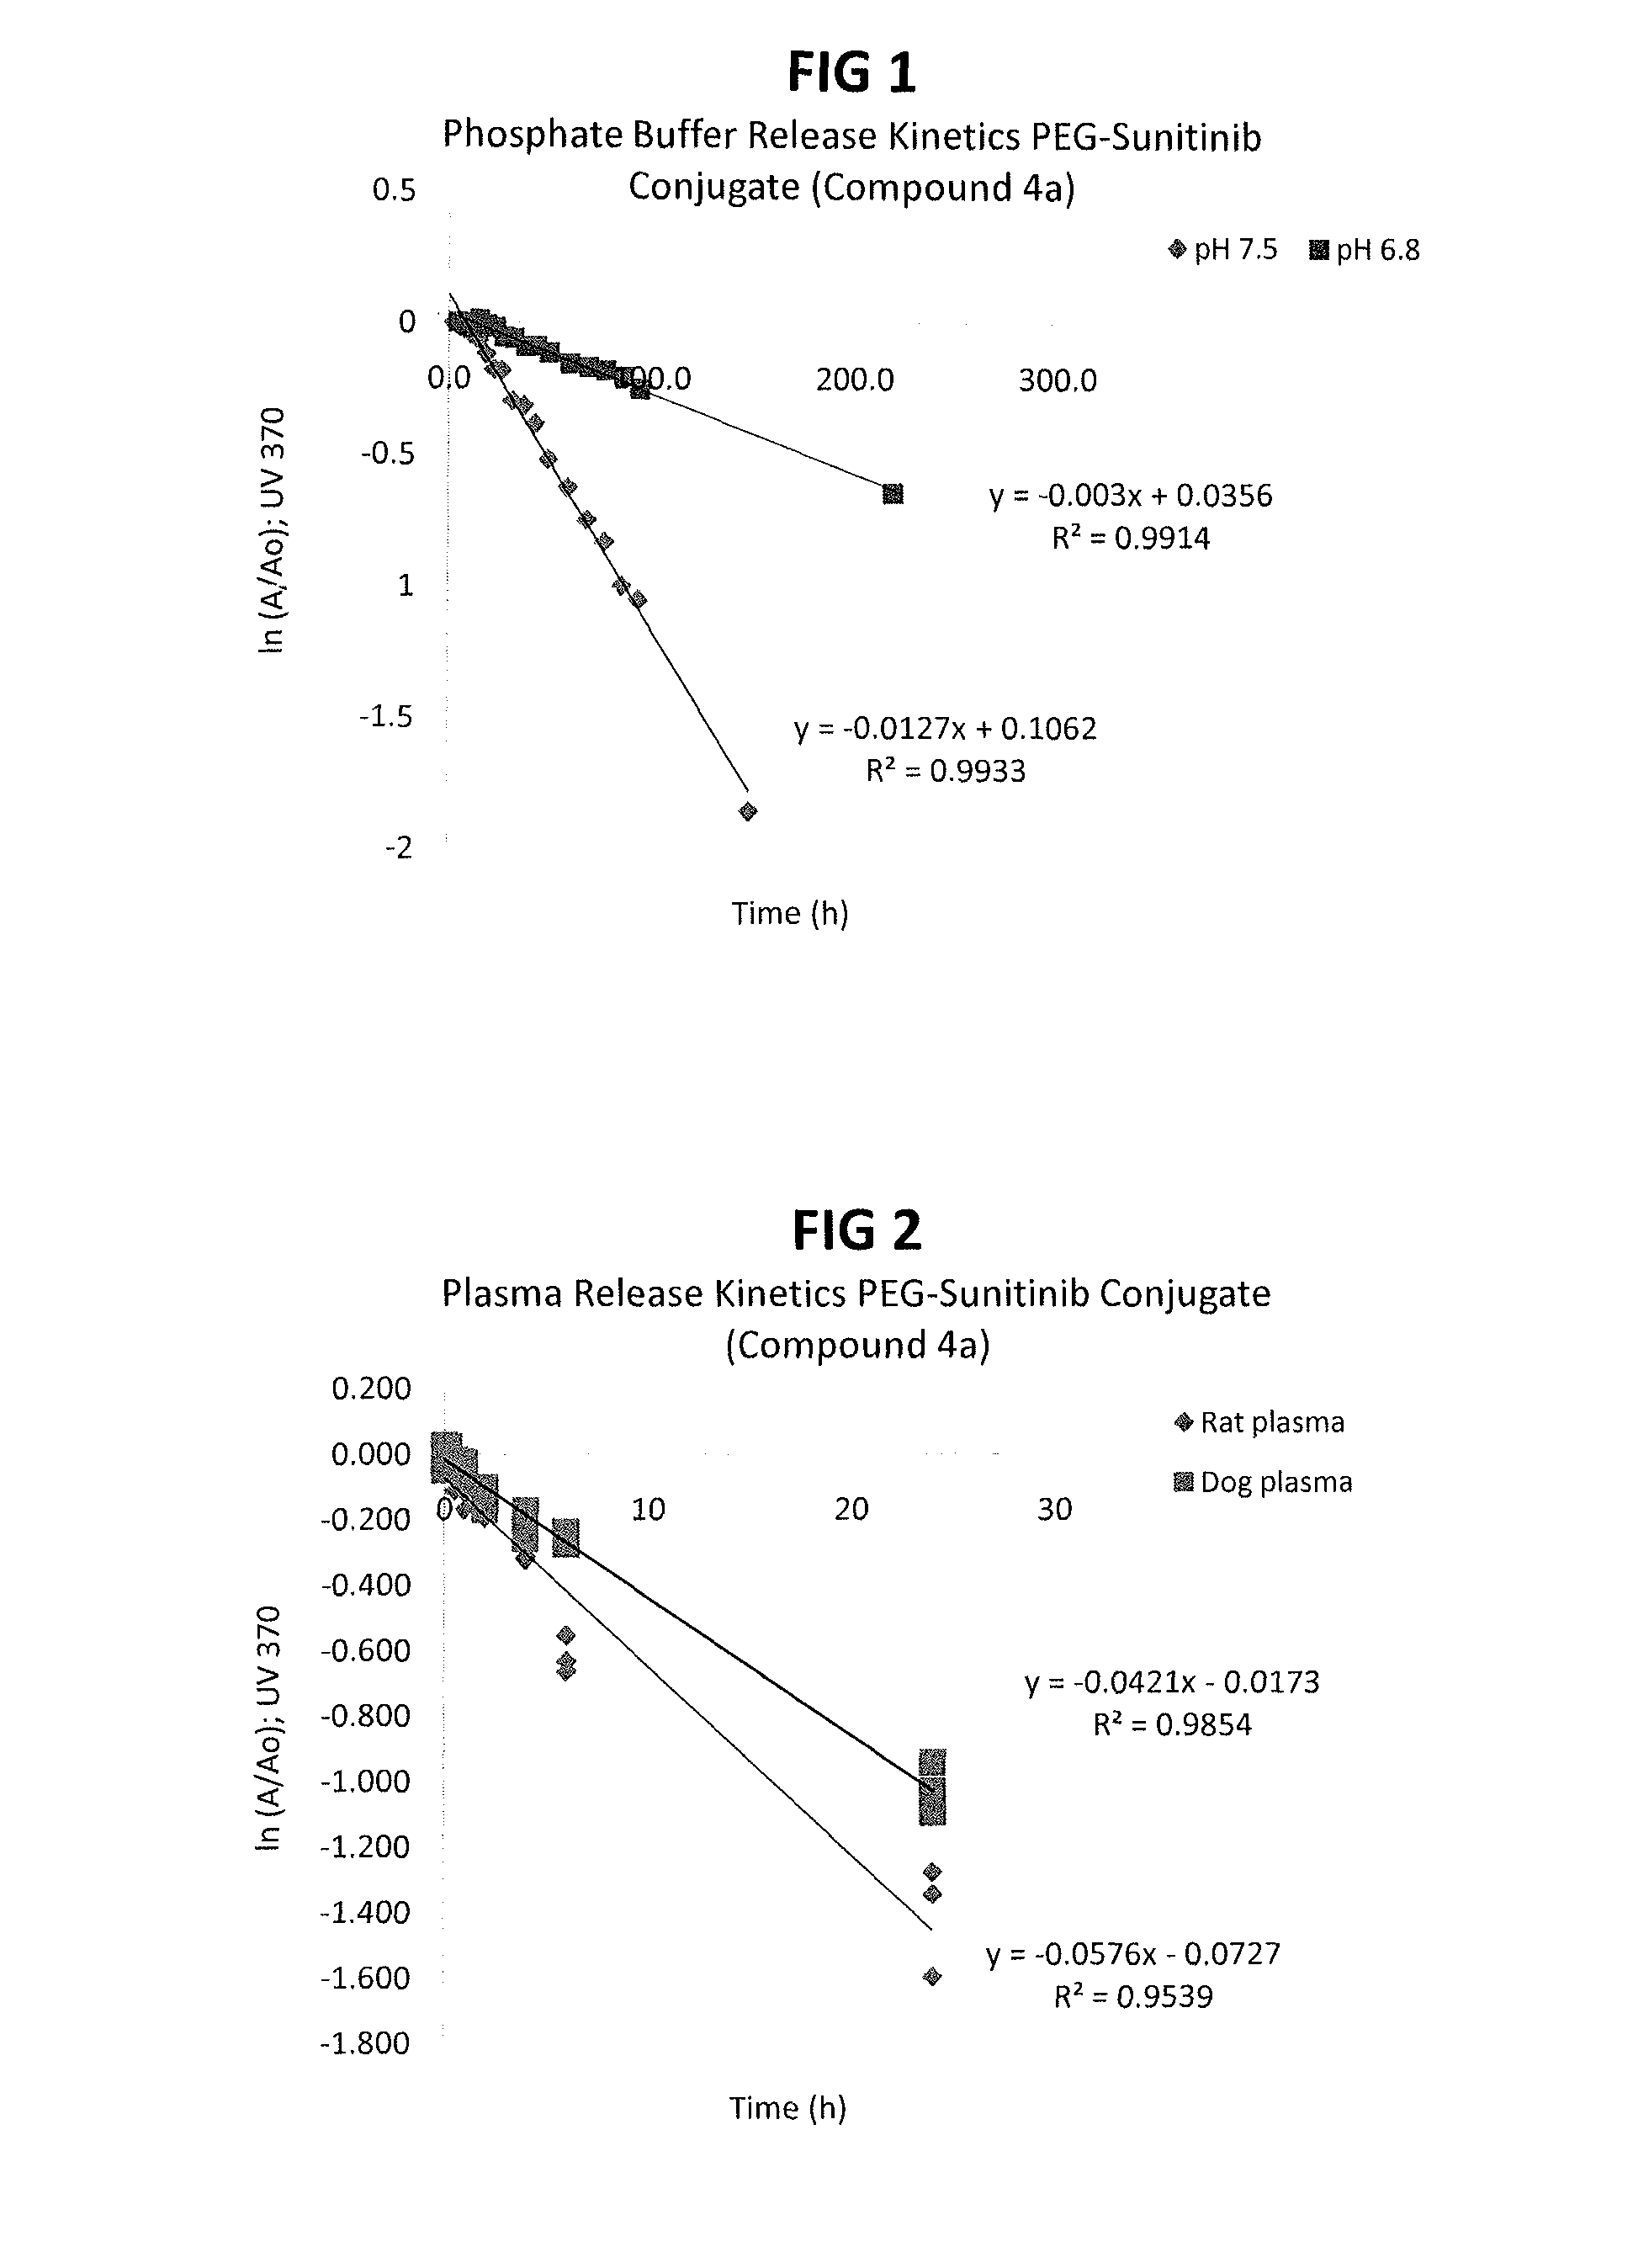 Polymer-sunitinib conjugates